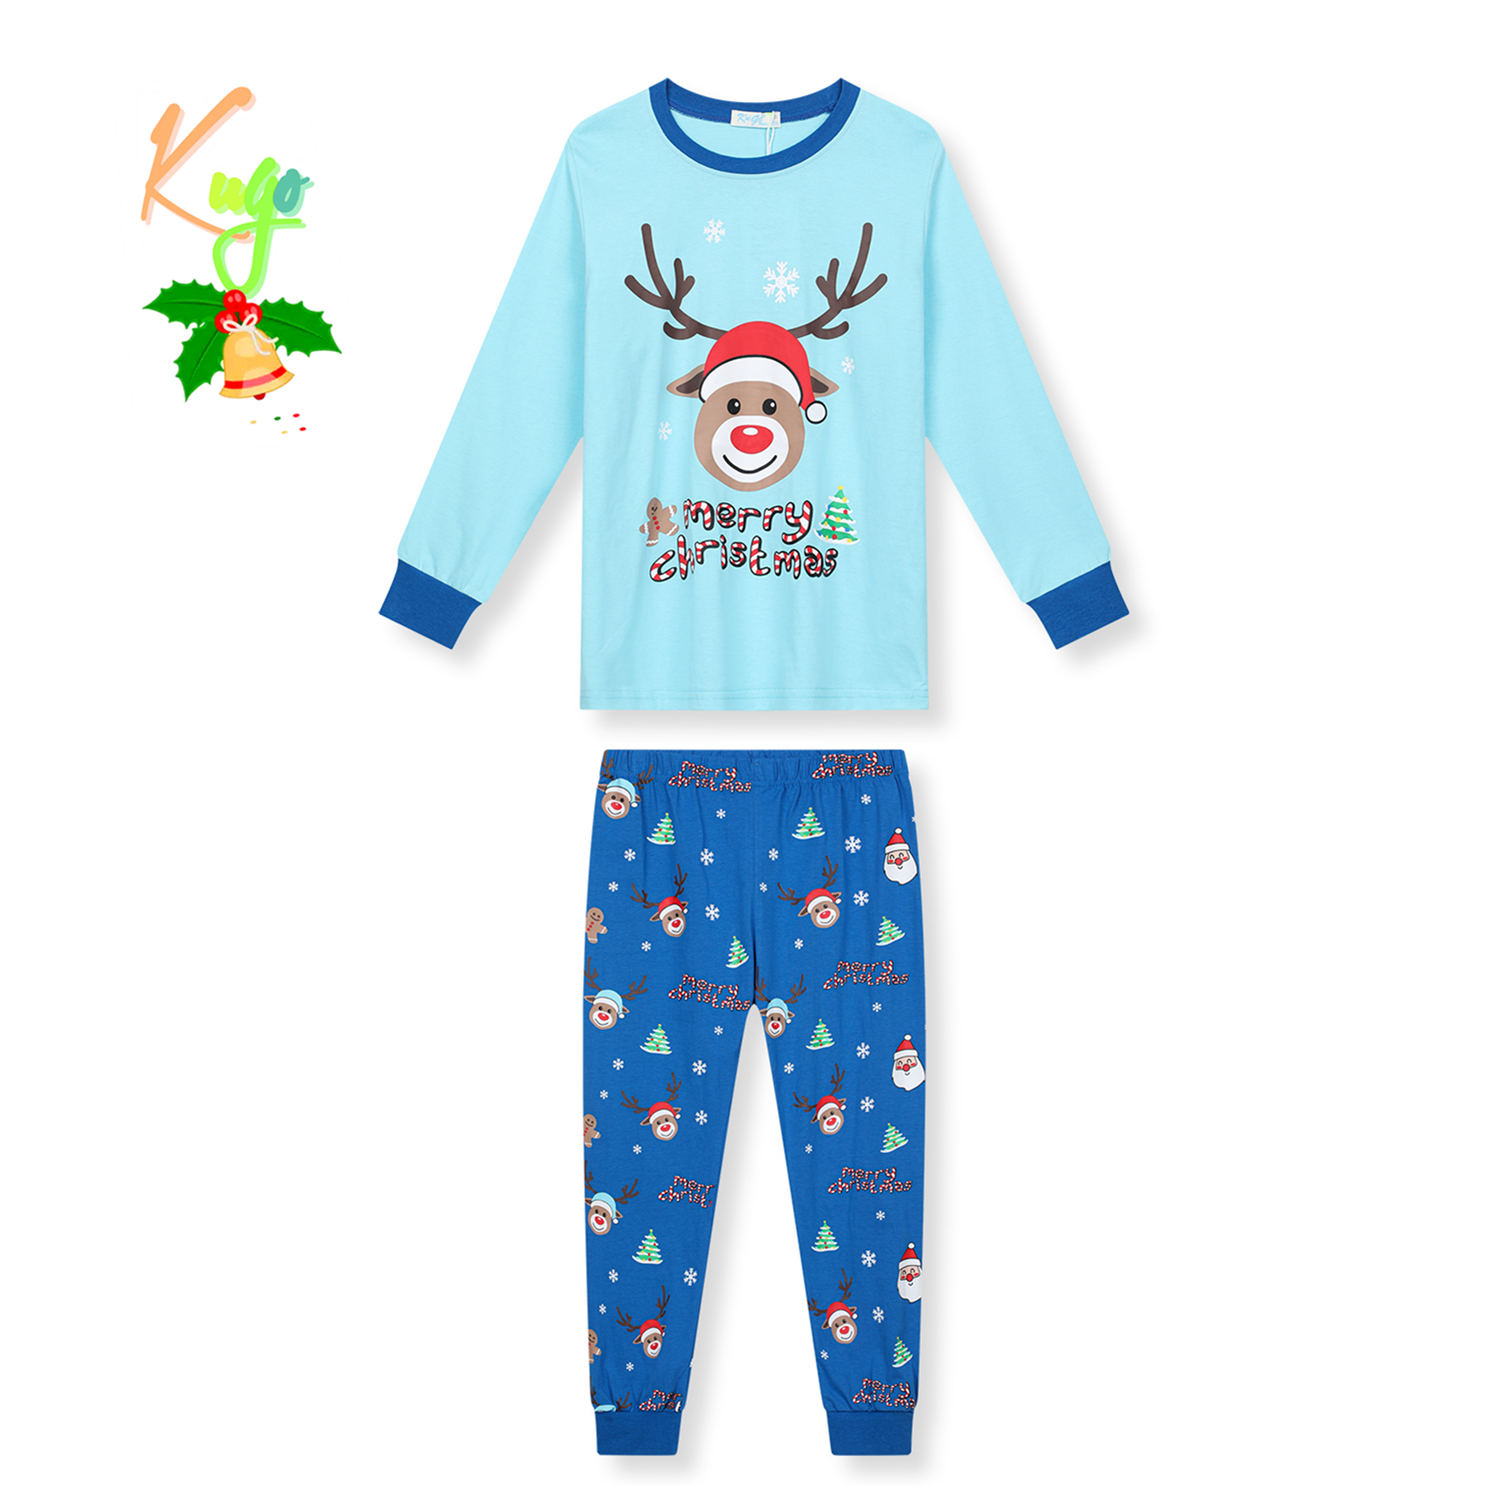 Chlapecké pyžamo - KUGO MP3837, světle tyrkysová / modré kalhoty Barva: Tyrkysová, Velikost: 164